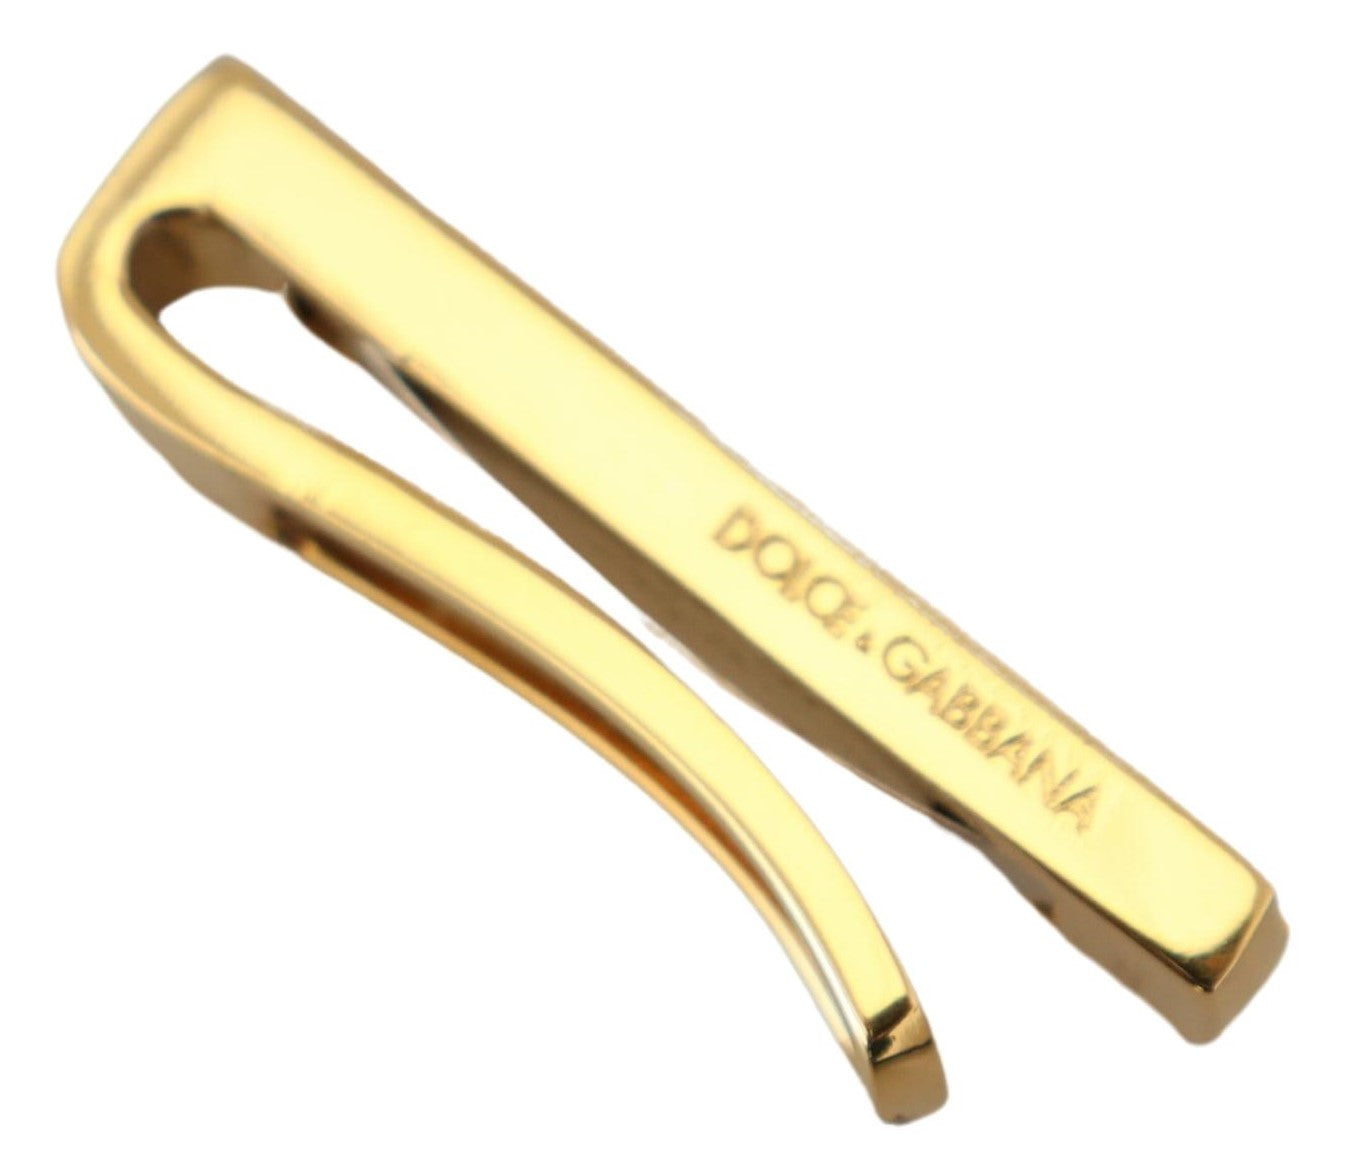 Dolce & Gabbana Gold Silber Messing Logo Männer Krawatte Clip